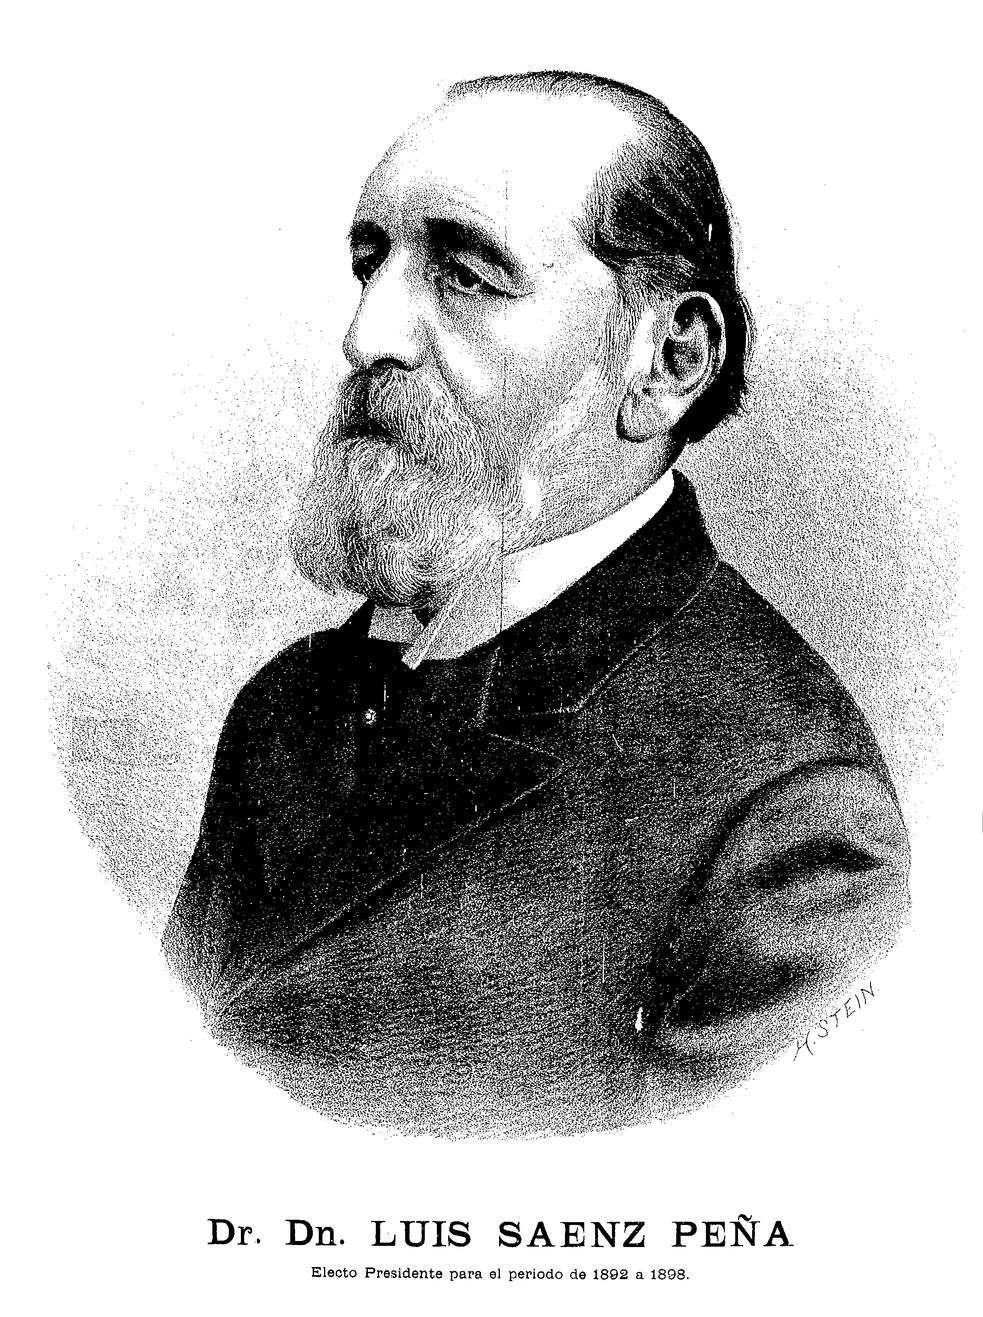 Luis Sáenz Peña - El Mosquito, 1892